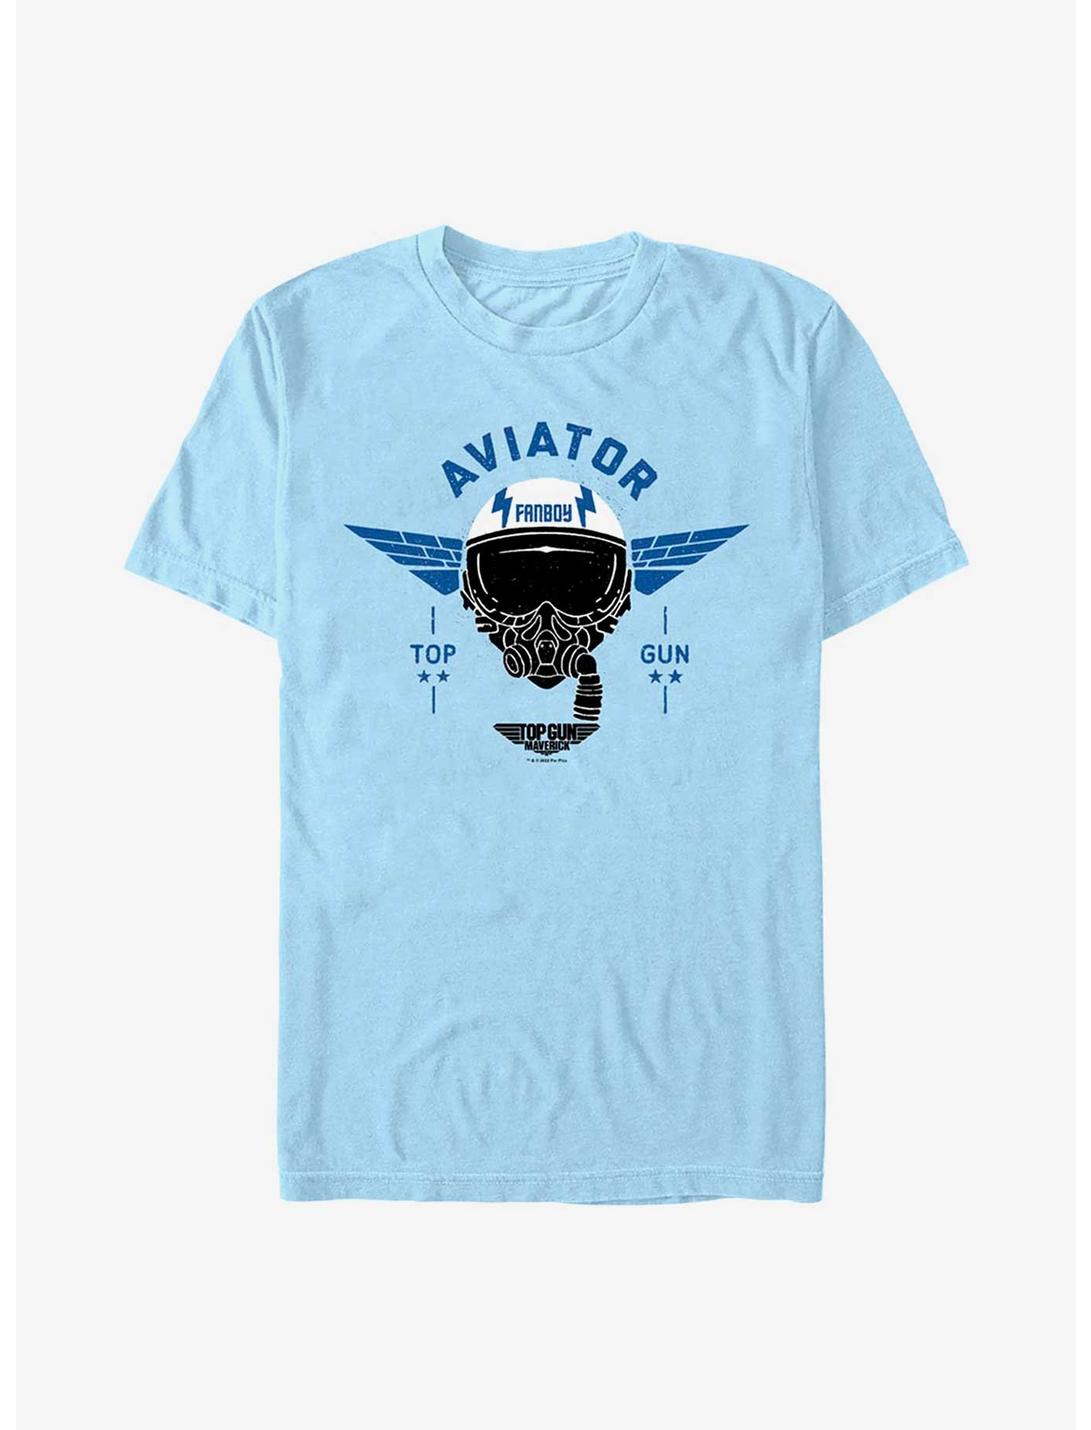 Top Gun: Maverick Fanboy Aviator T-Shirt, LT BLUE, hi-res